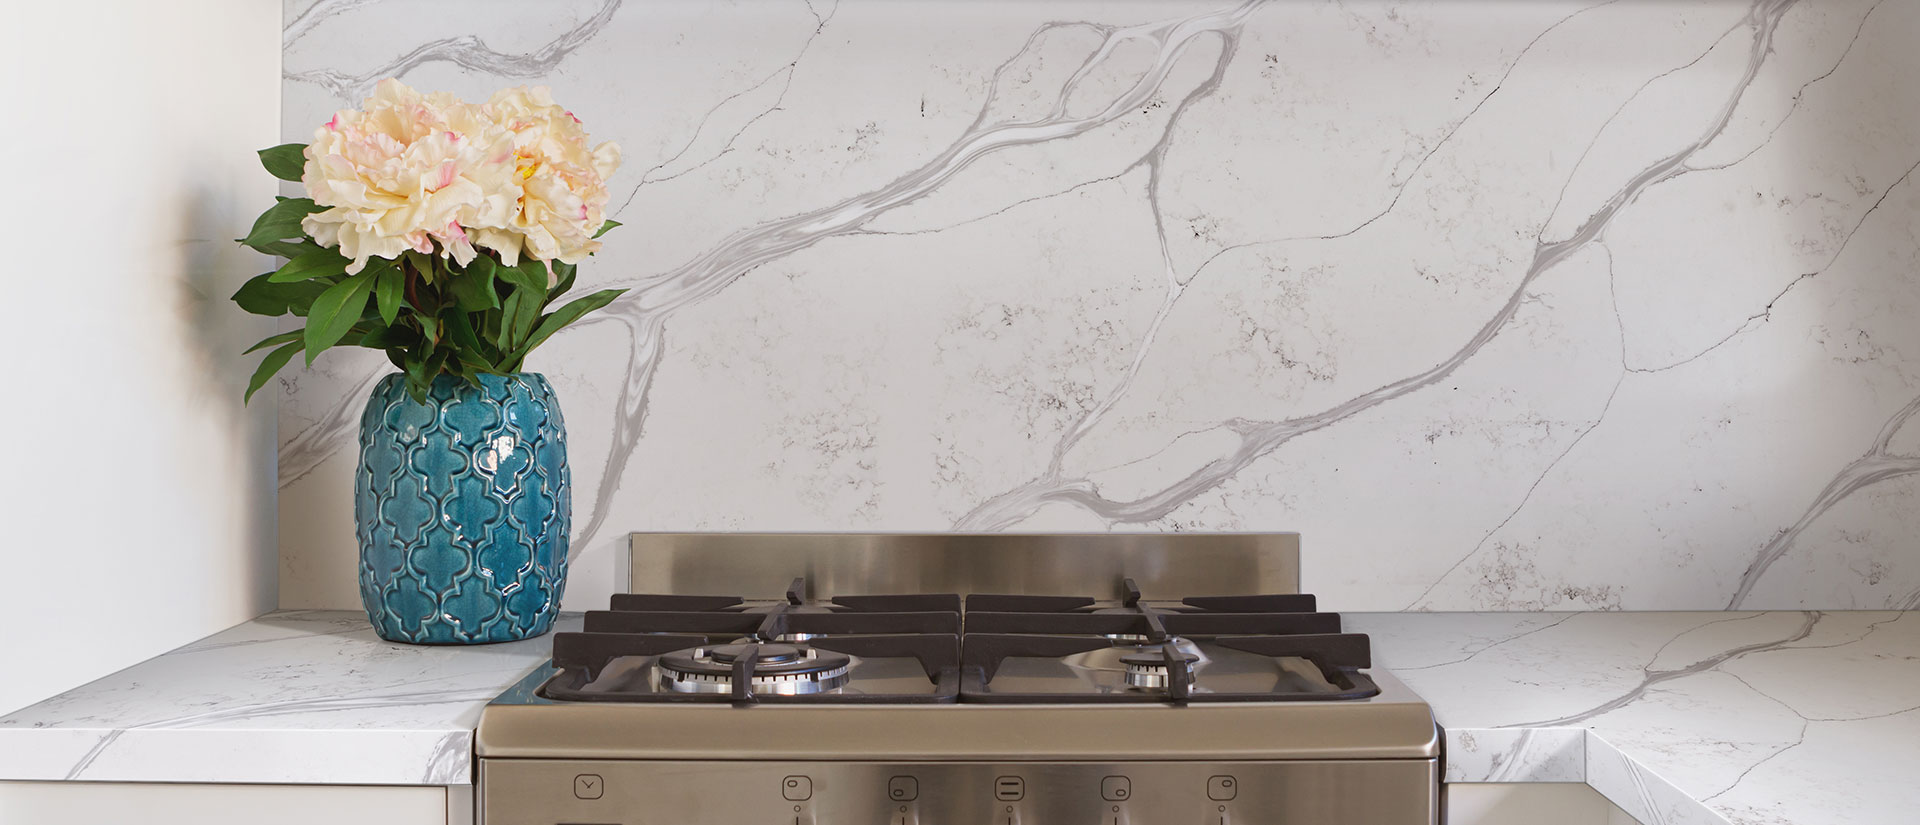 Calacatta Bolina quartz countertop in a bright modern kitchen